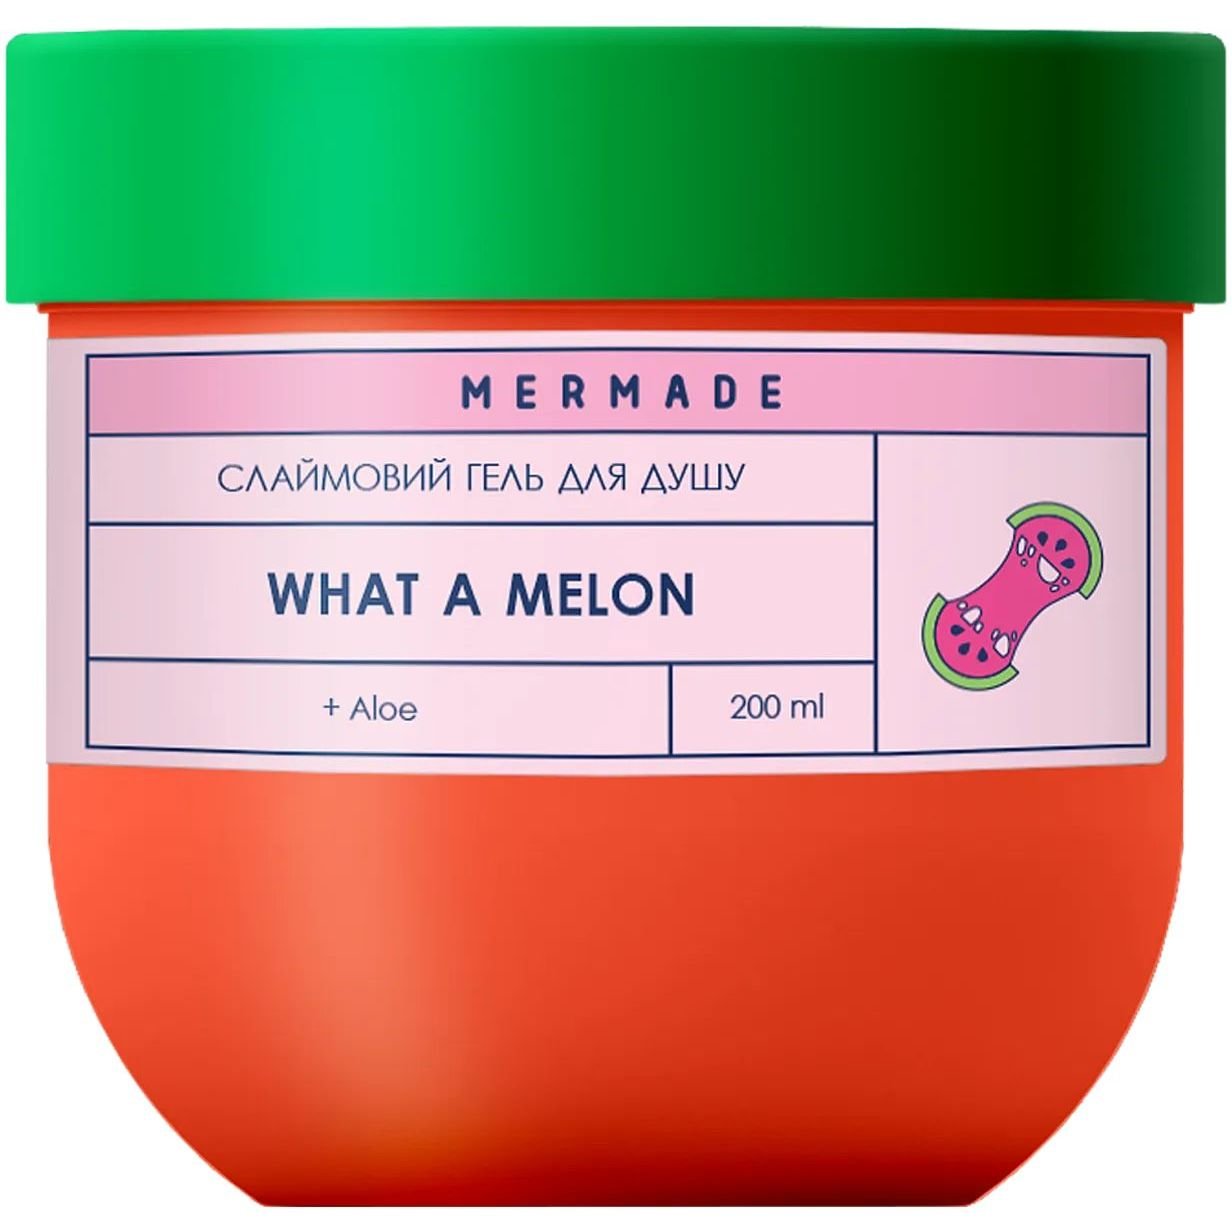 Слайм гель для душа Mermade What a Melon, 200 г - фото 1